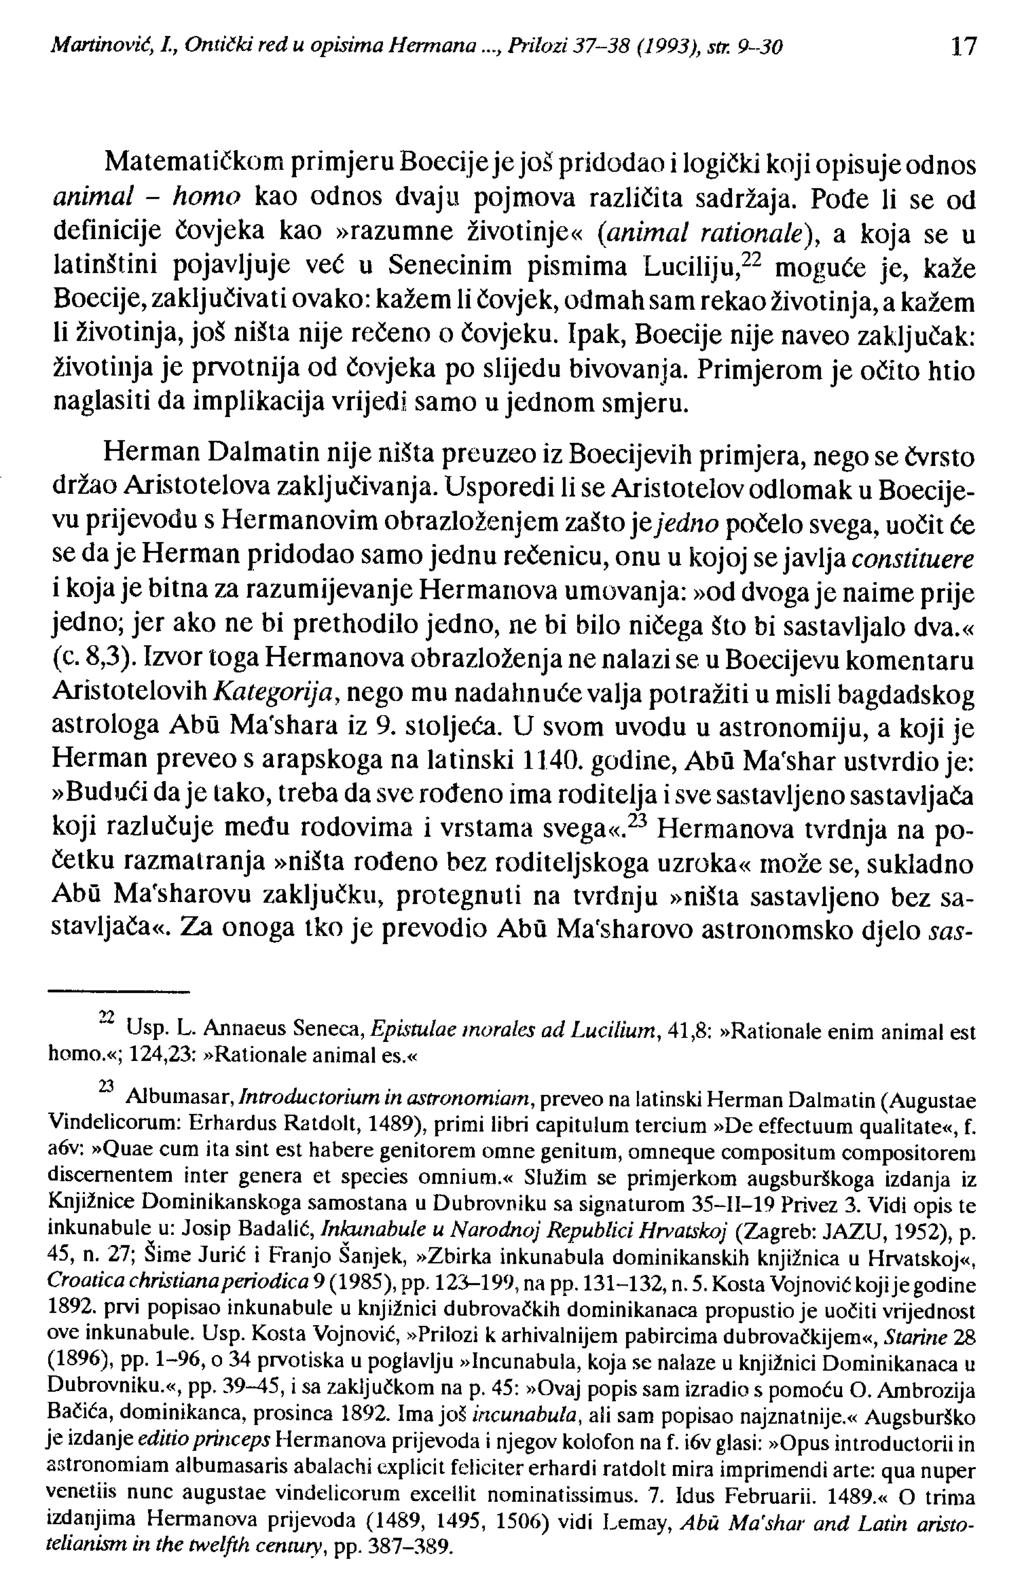 Martinović, 1, Ontički red u opisima Hennana..., Prilozi 37-38 (1993), str.